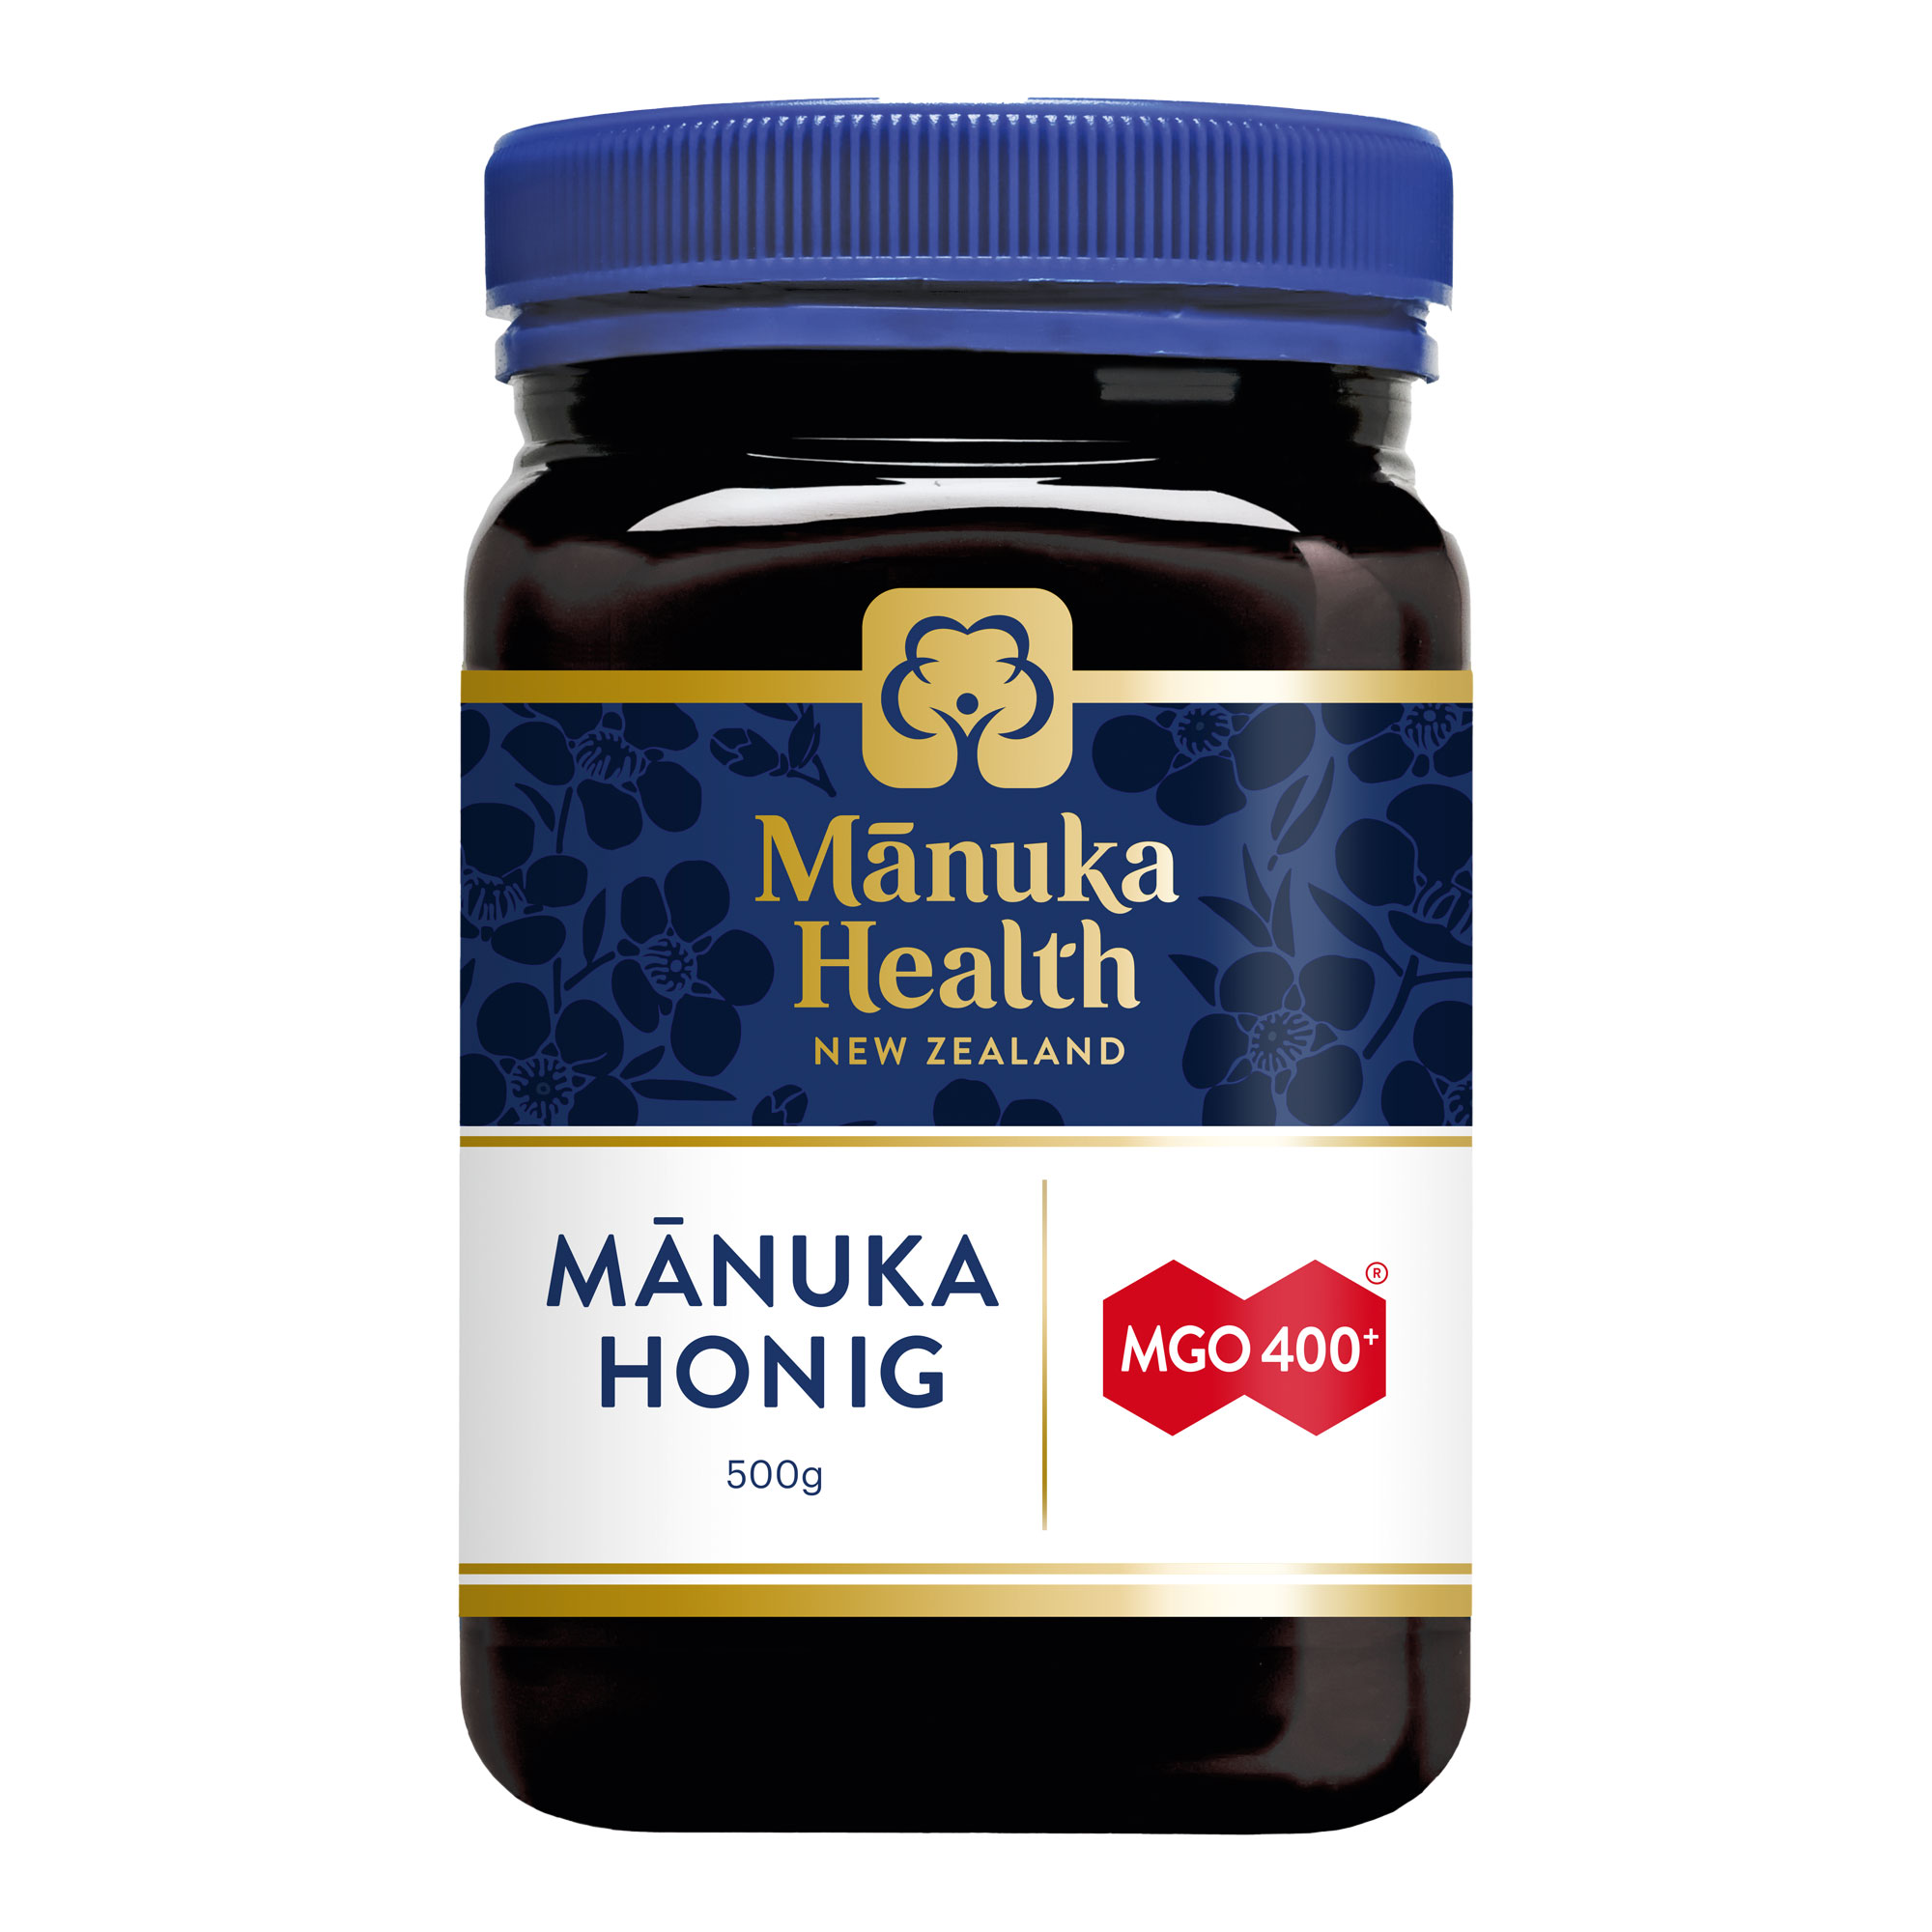 Manuka Honig zur Stärkung des allgemeinen Wohlbefindens. Mit Gehalt von mindestens 400 mg MGO.